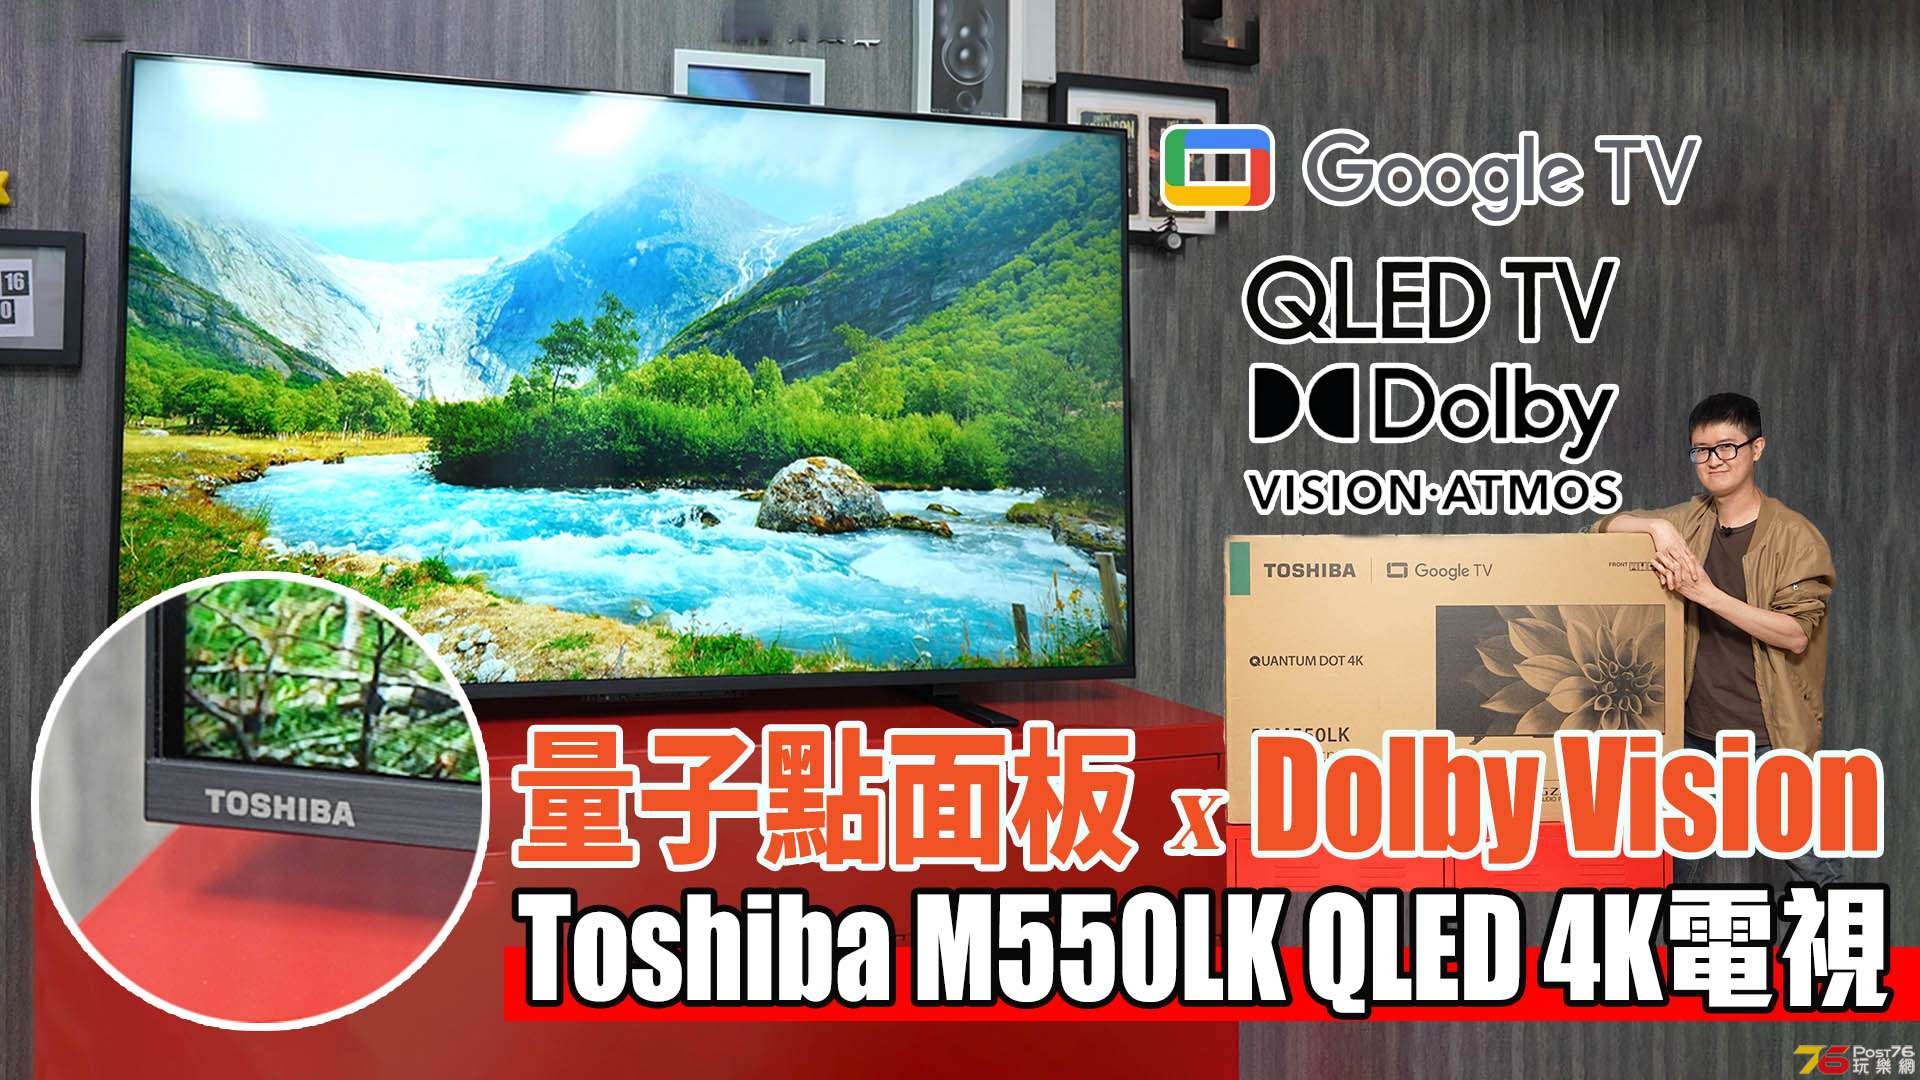 ToshibaM550LKTV review forum copy.jpg